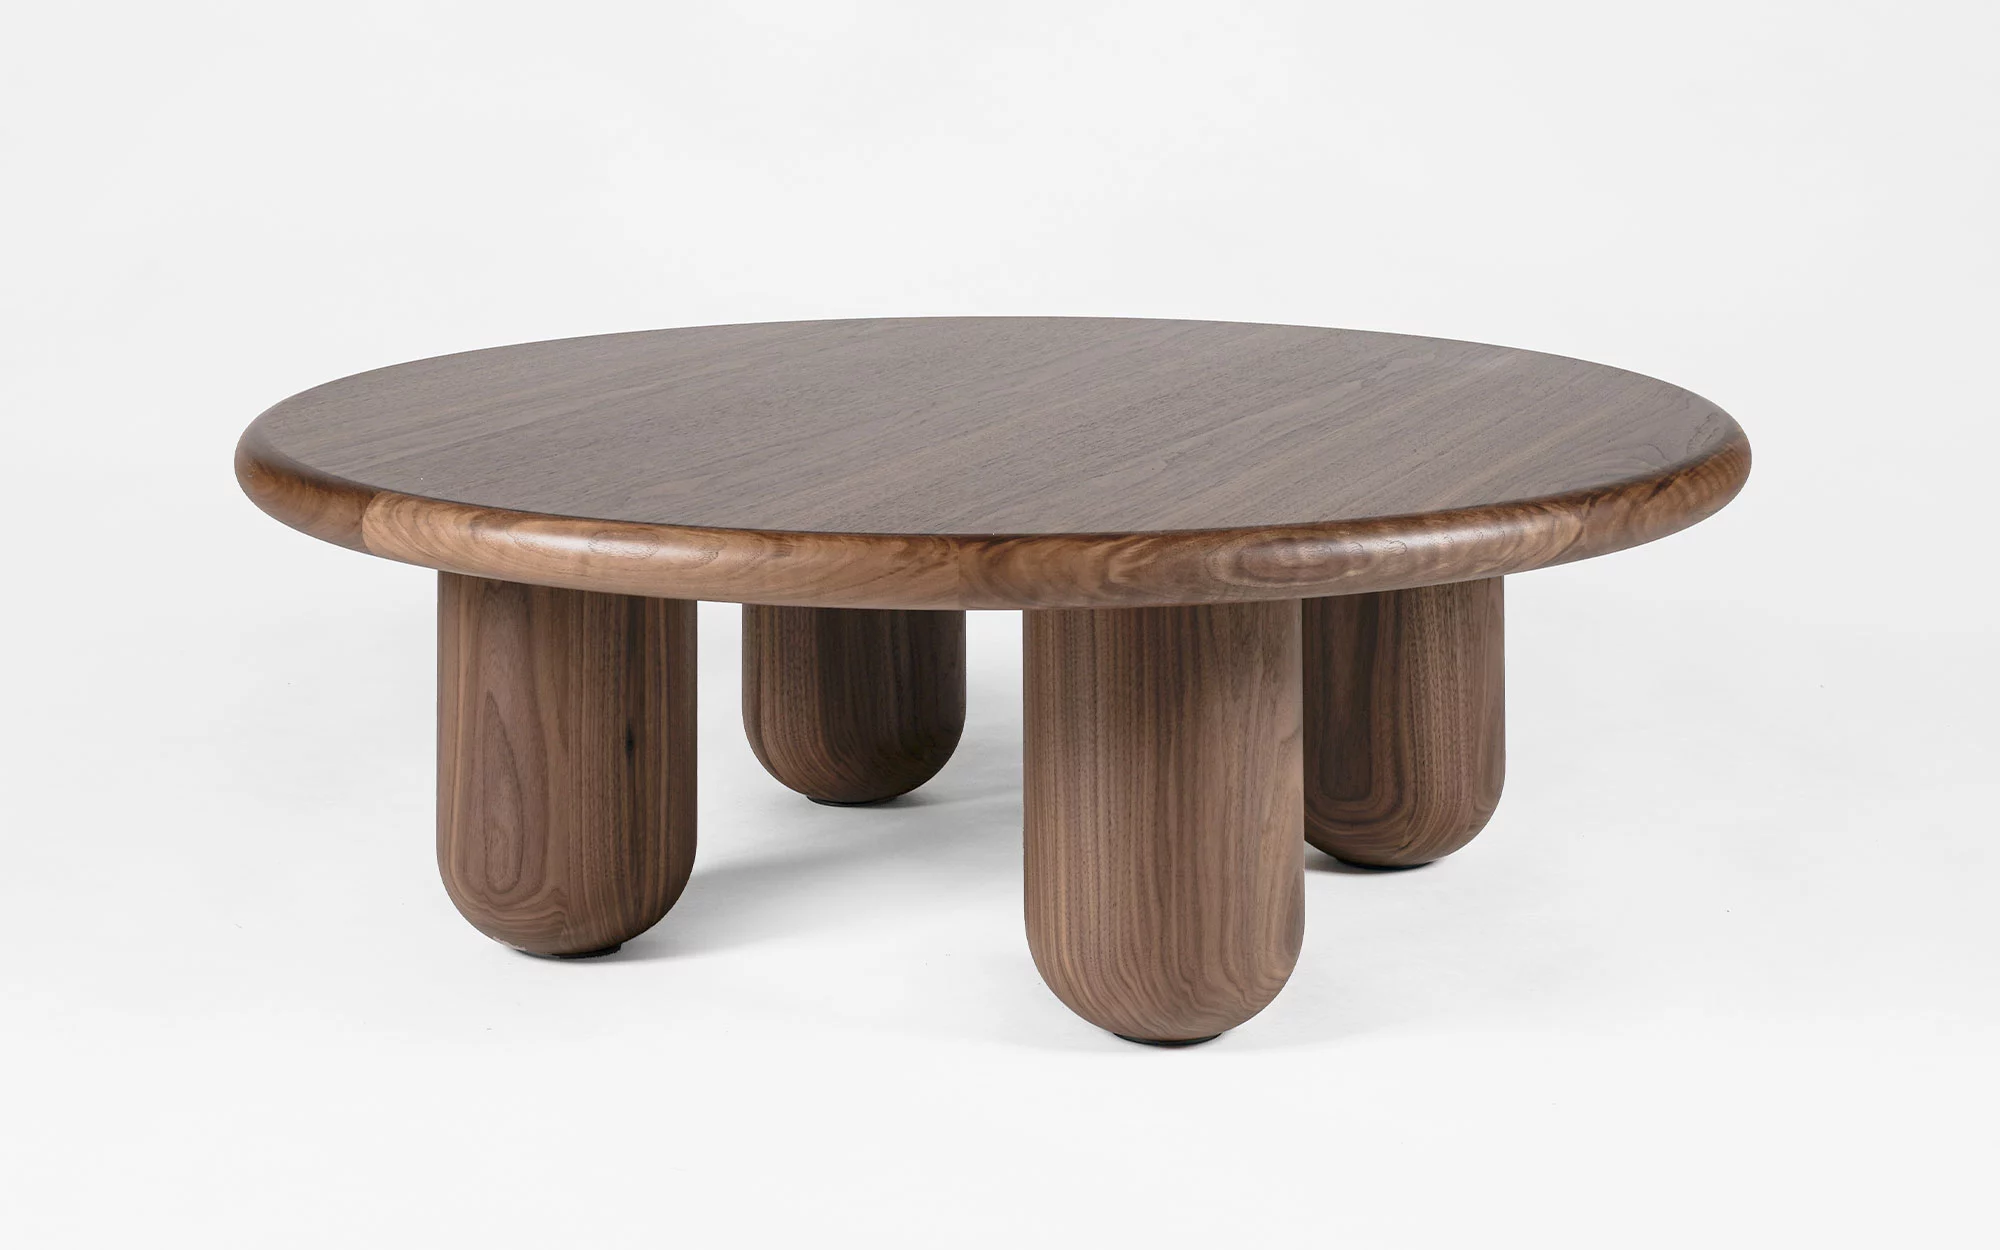 Organism coffee table - Jaime Hayon - Mirror - Galerie kreo